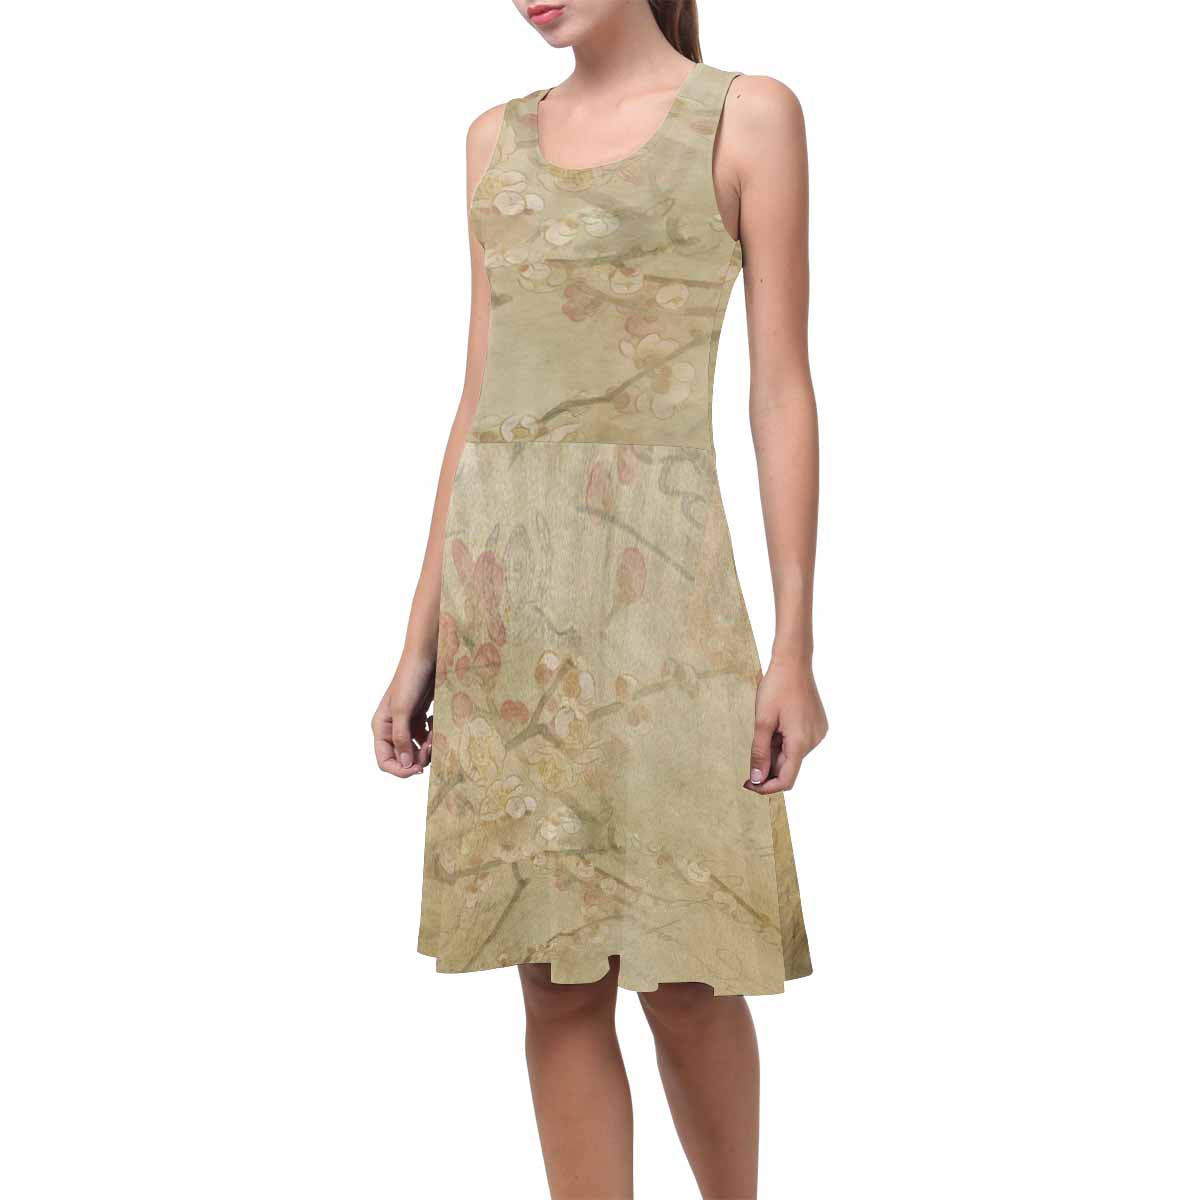 Antique General summer dress, MODEL 09534, design 25